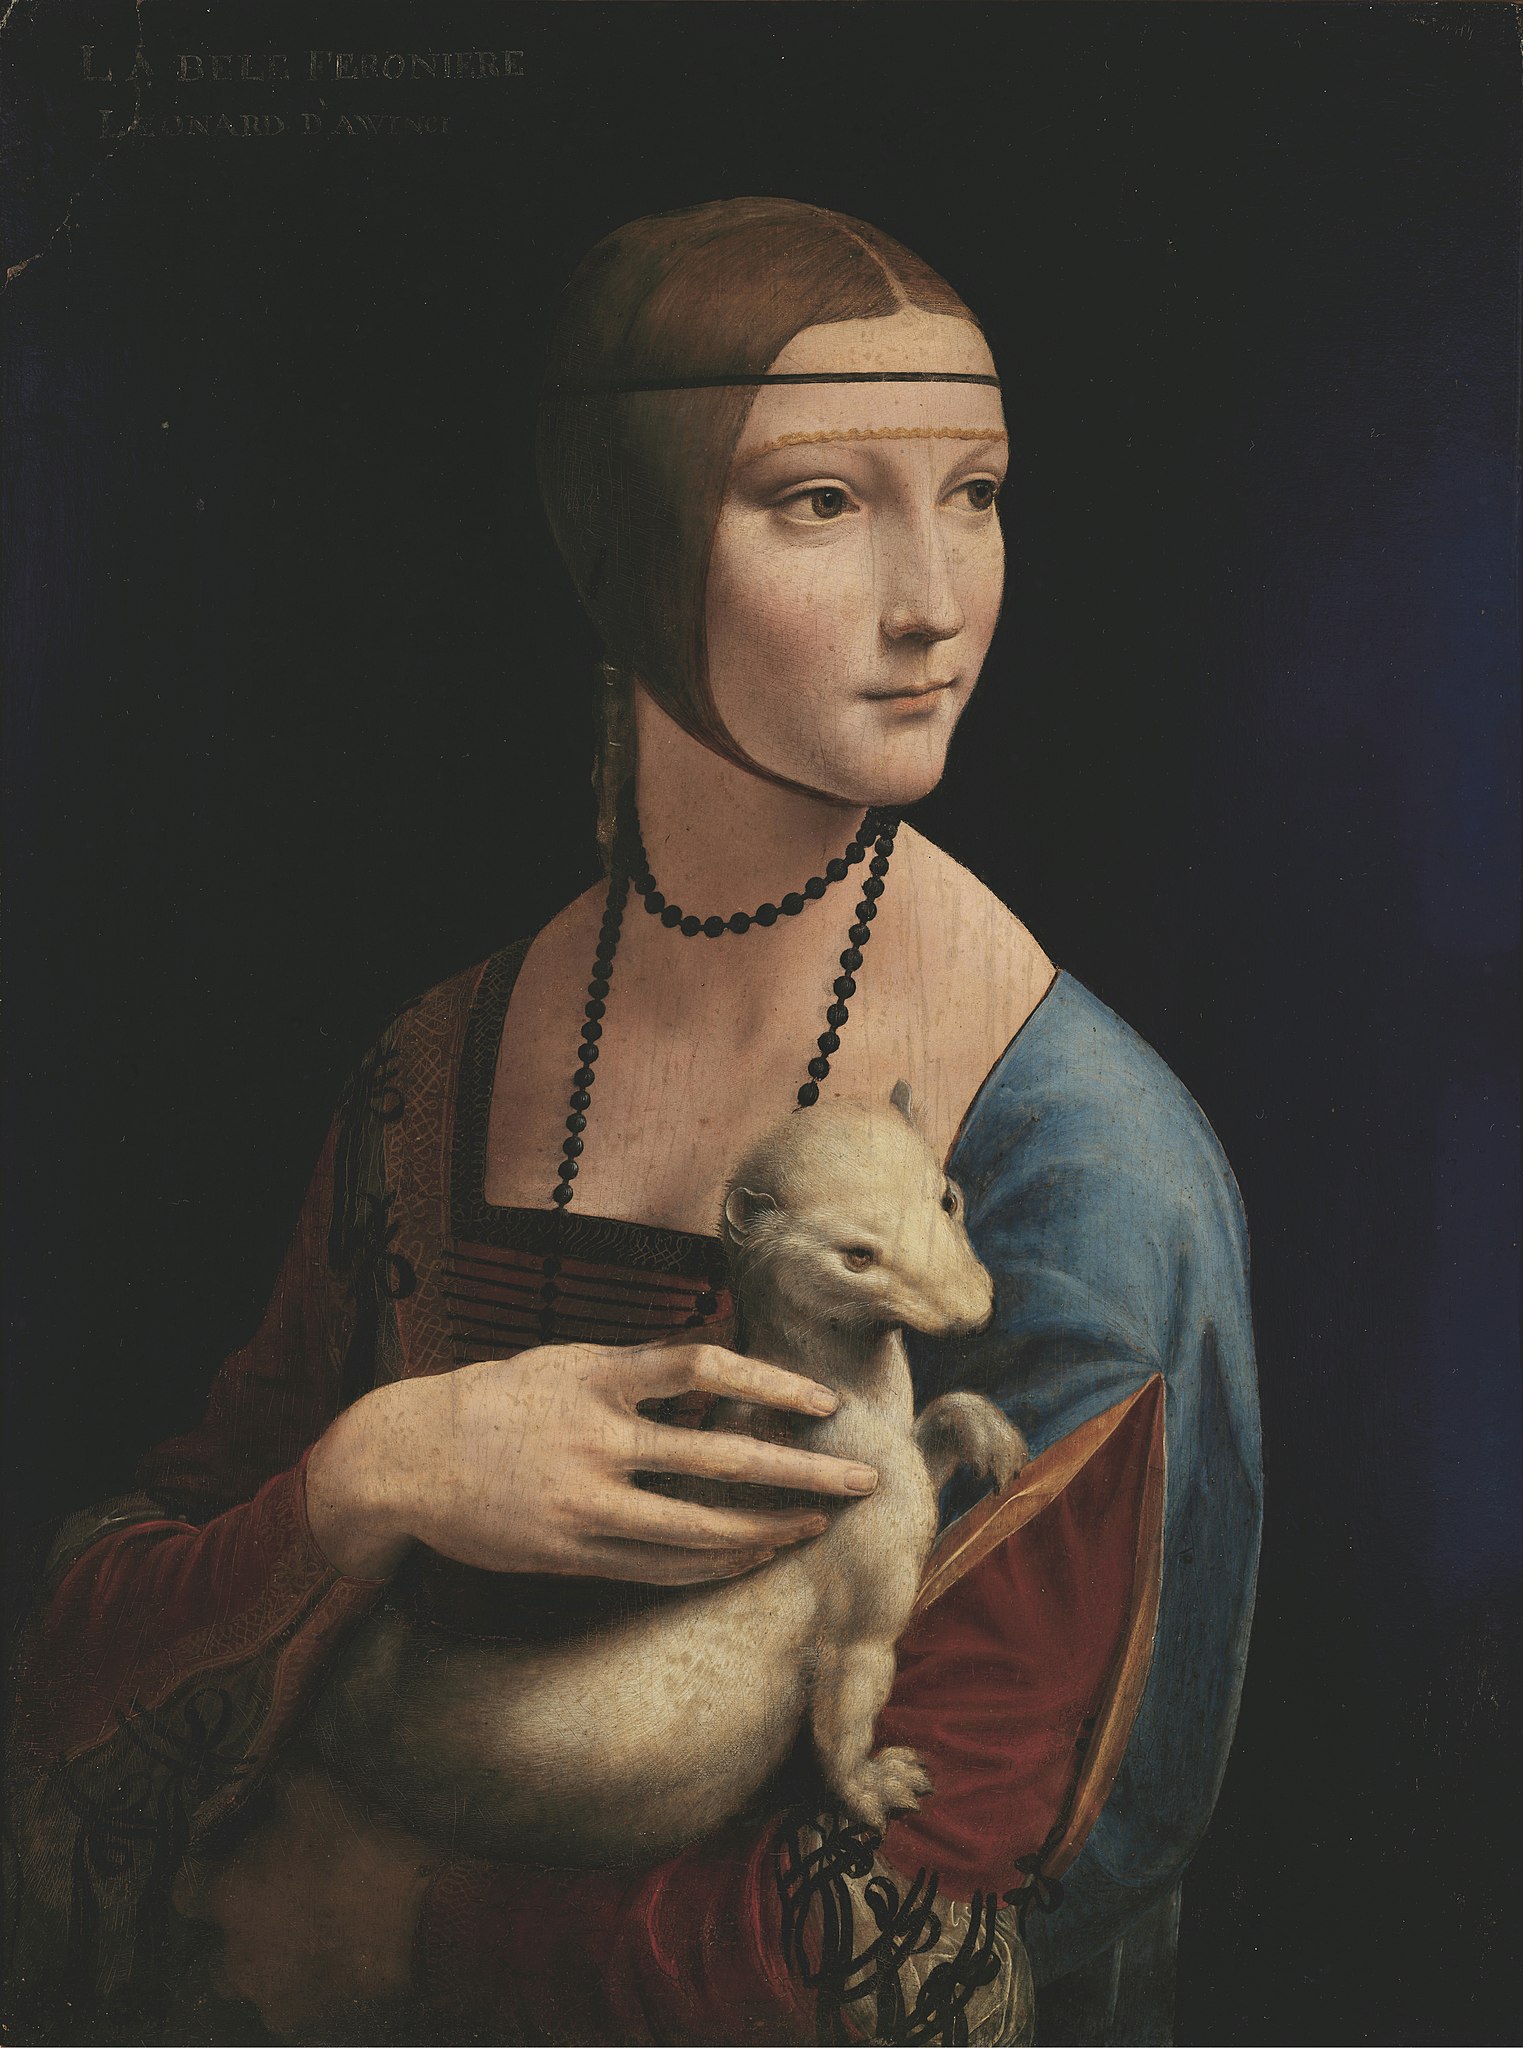 La dama del armiño by Leonardo da Vinci - circa 1490 - 54 x 39 cm Museo Nacional de Cracovia